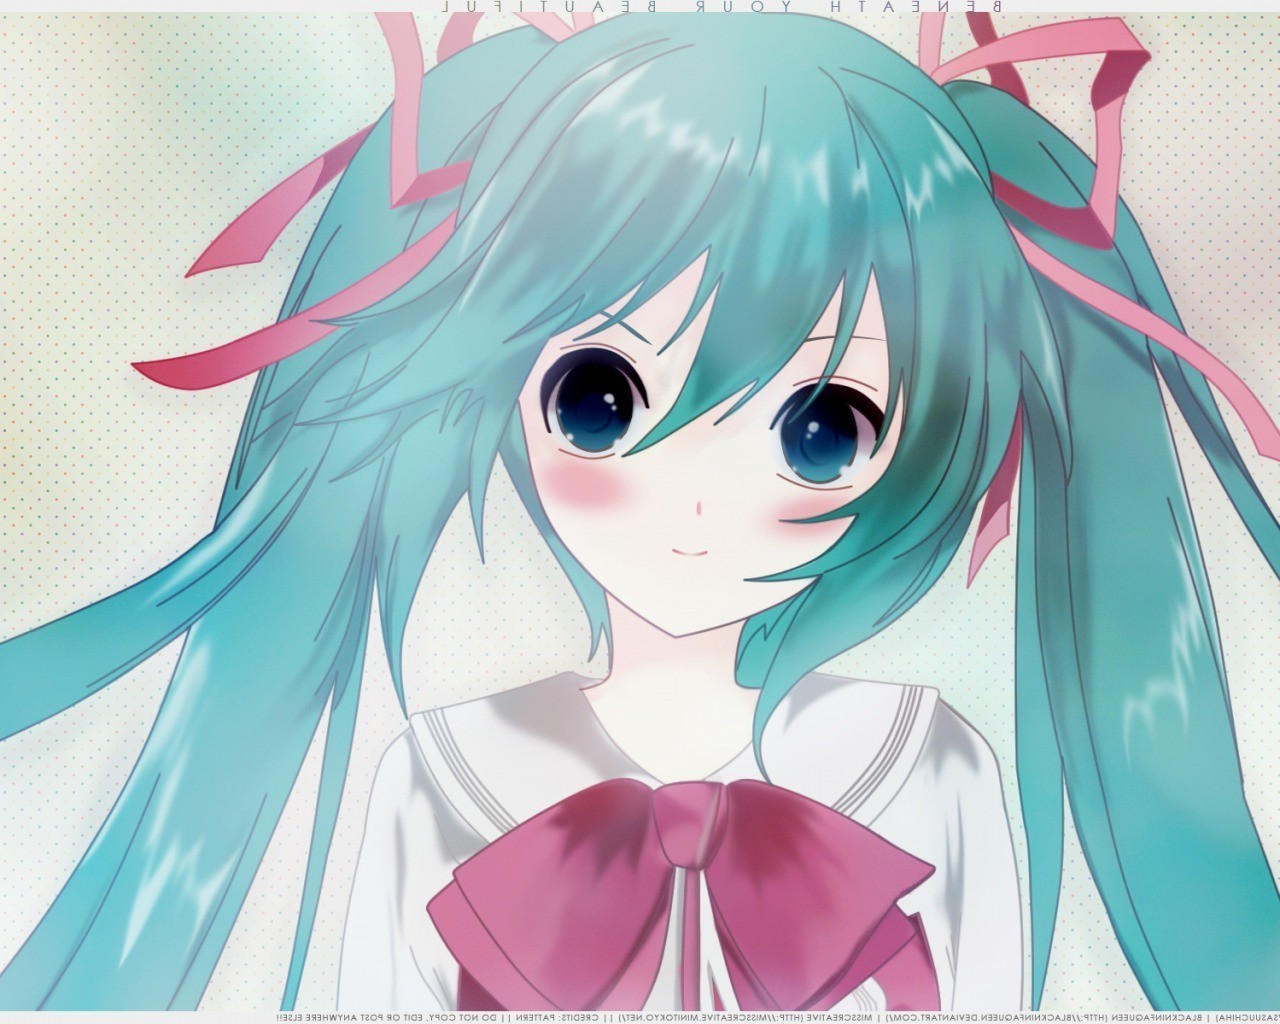 3. Miku Hatsune (Vocaloid) - wide 6